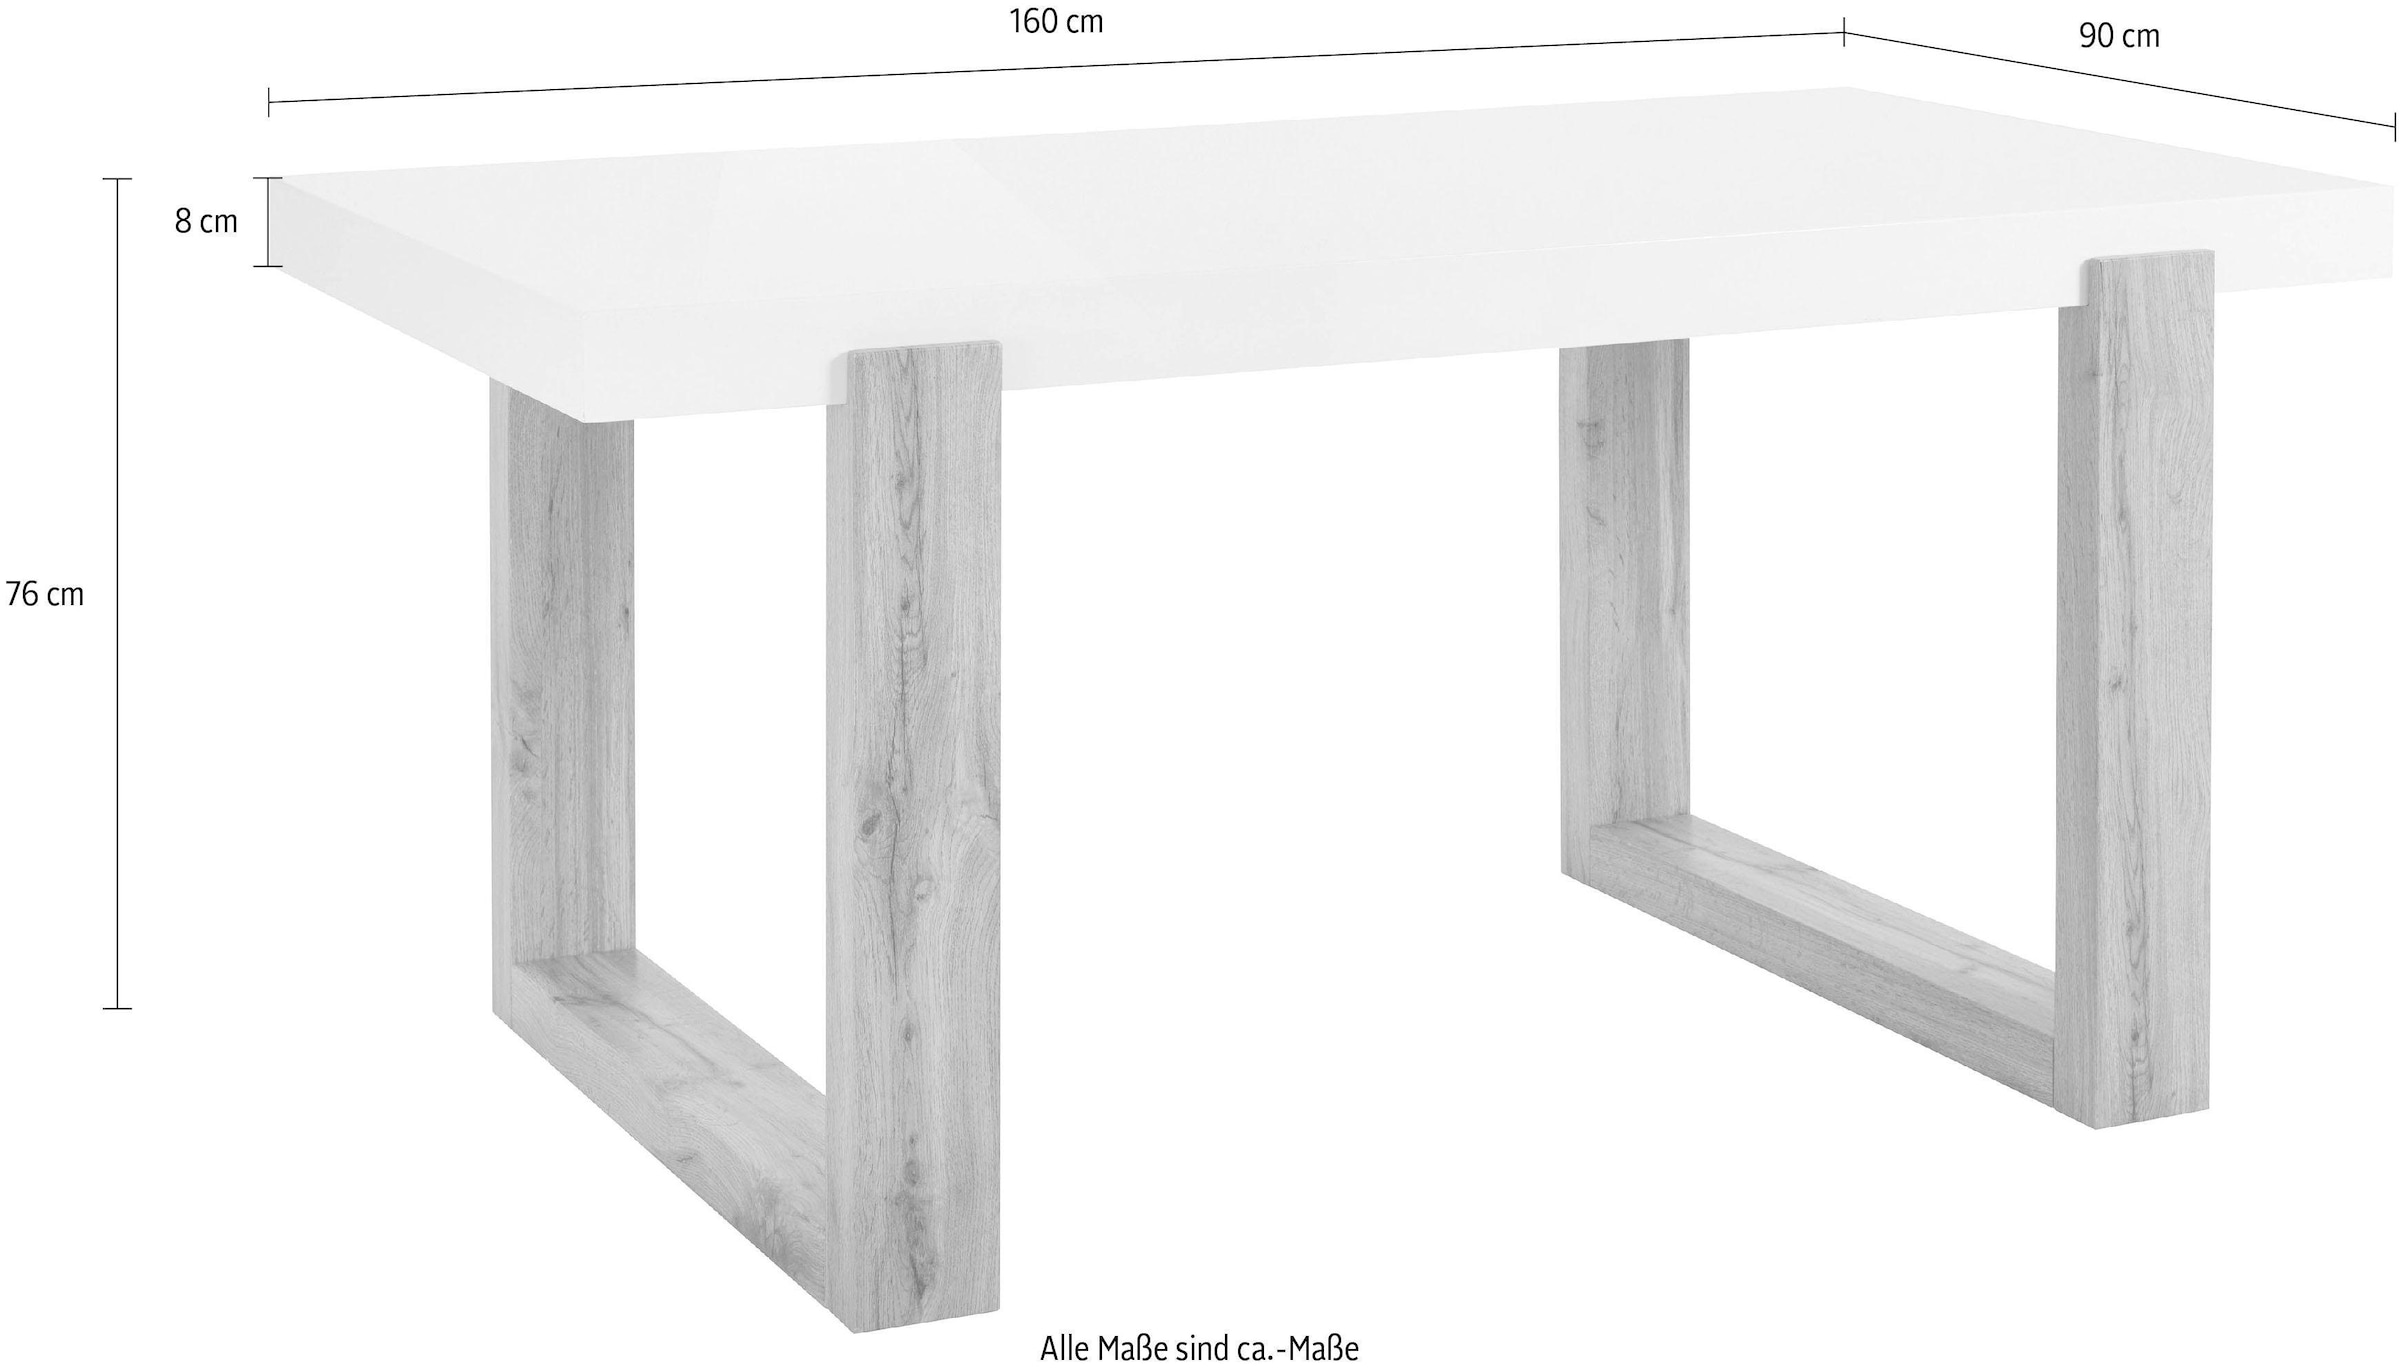 INOSIGN Esstisch »Solid«, weiße hochglanzfarbene Tischplatte, in zwei verschiedenen Größen